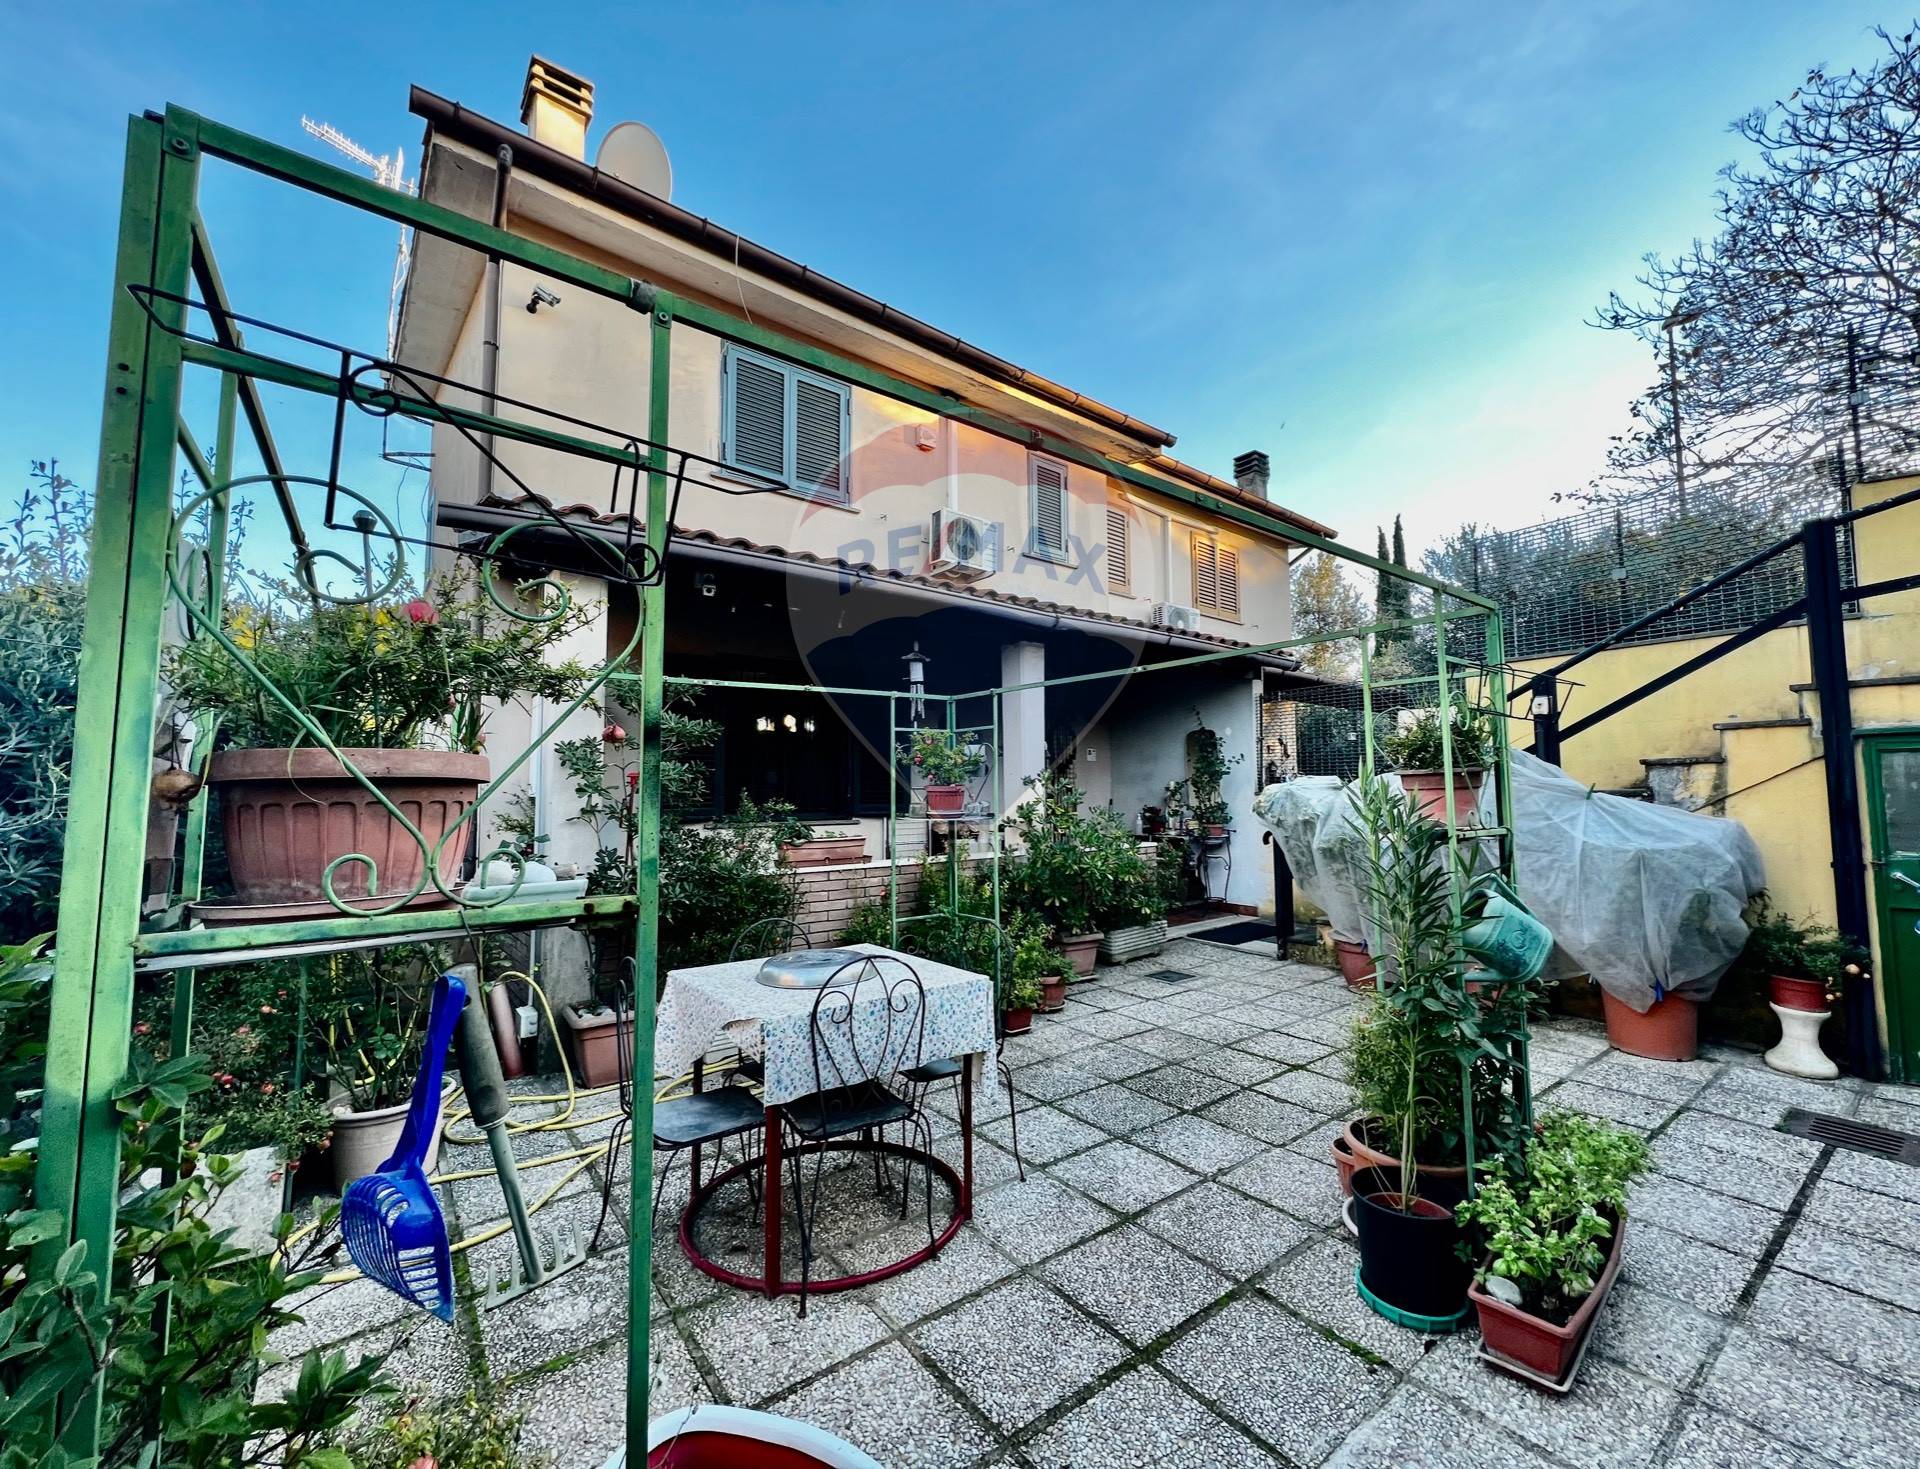 Villa in vendita a Magliano Romano, 4 locali, prezzo € 149.000 | CambioCasa.it